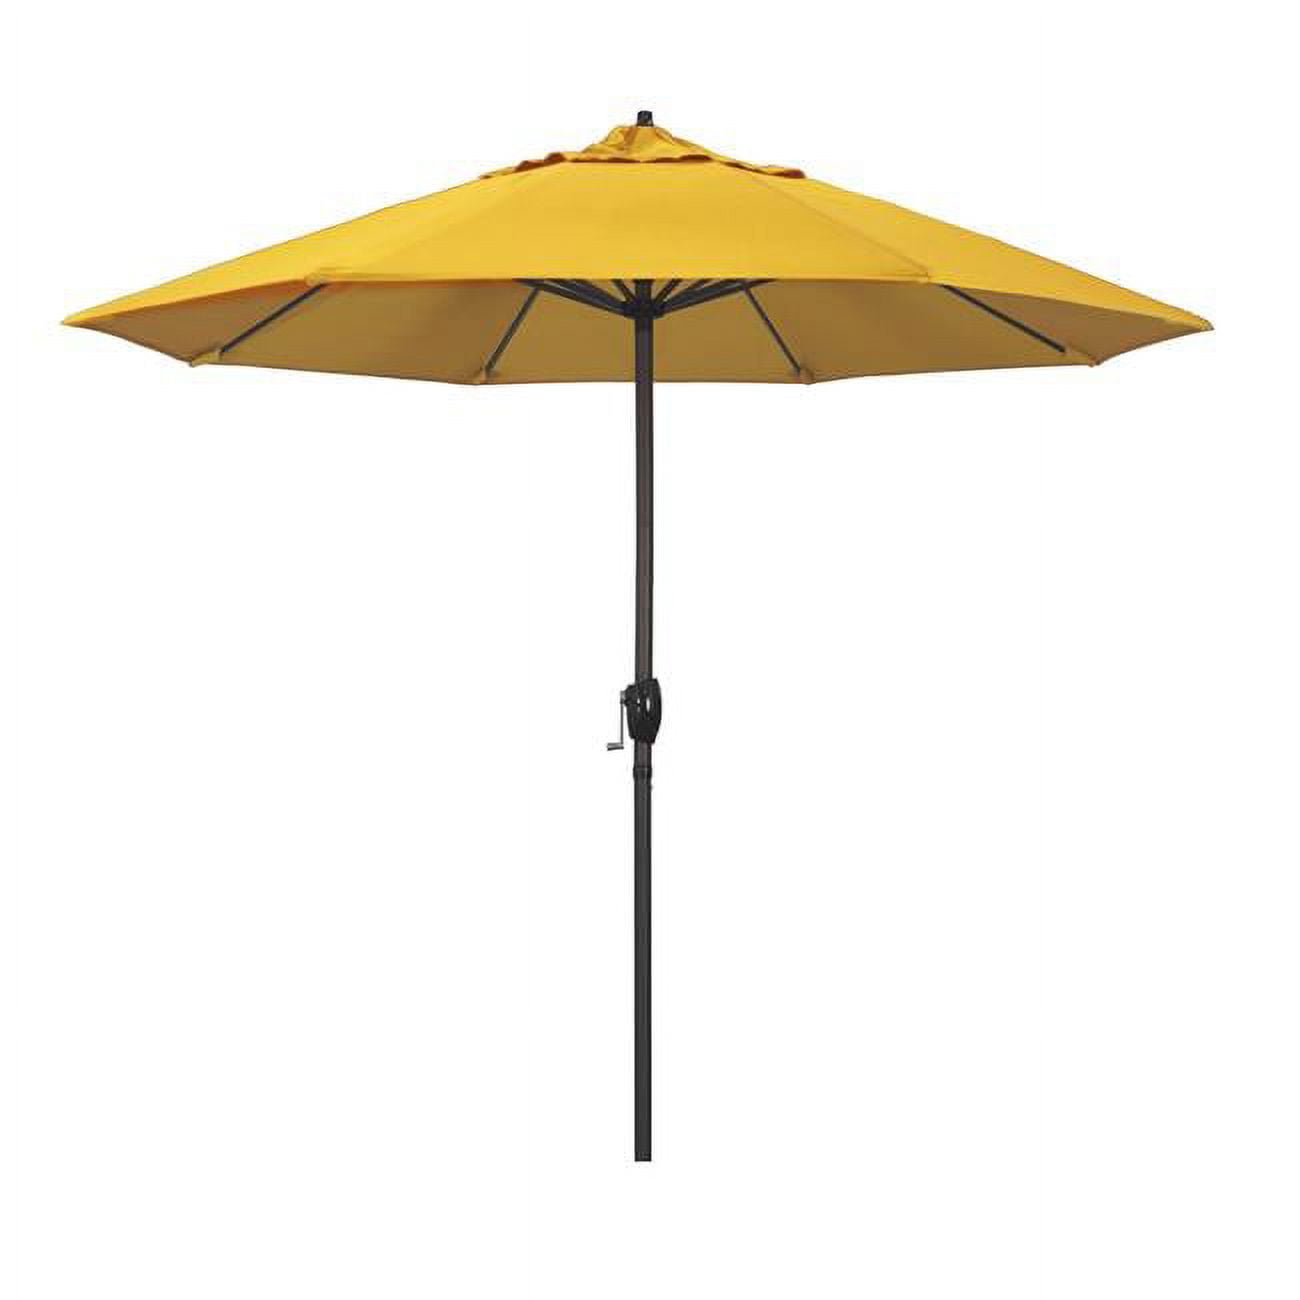 Ata908117-5457 9 Ft. Casa Series Patio Bronze Auto Tilt Crank Lift - Sunbrella 1a Sunflower Yellow Fabric